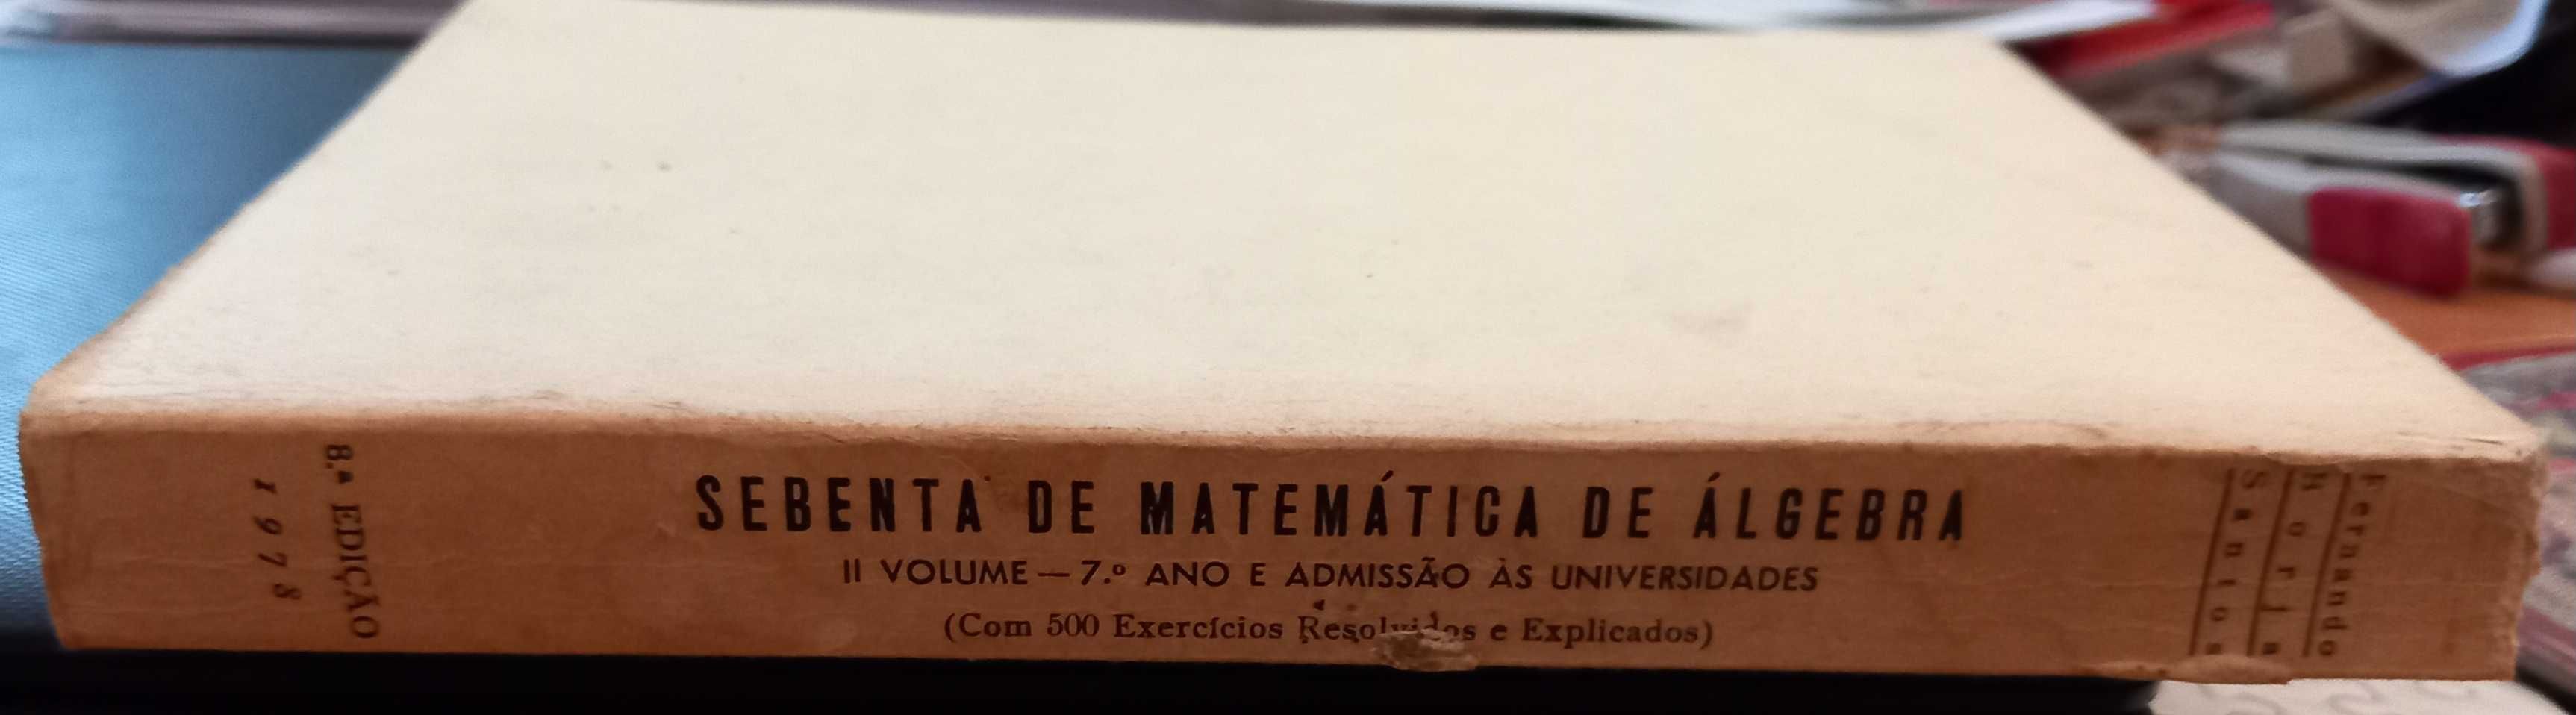 Sebenta de Matemática de Álgebra vol II 1978 de Fernando Borja Santos